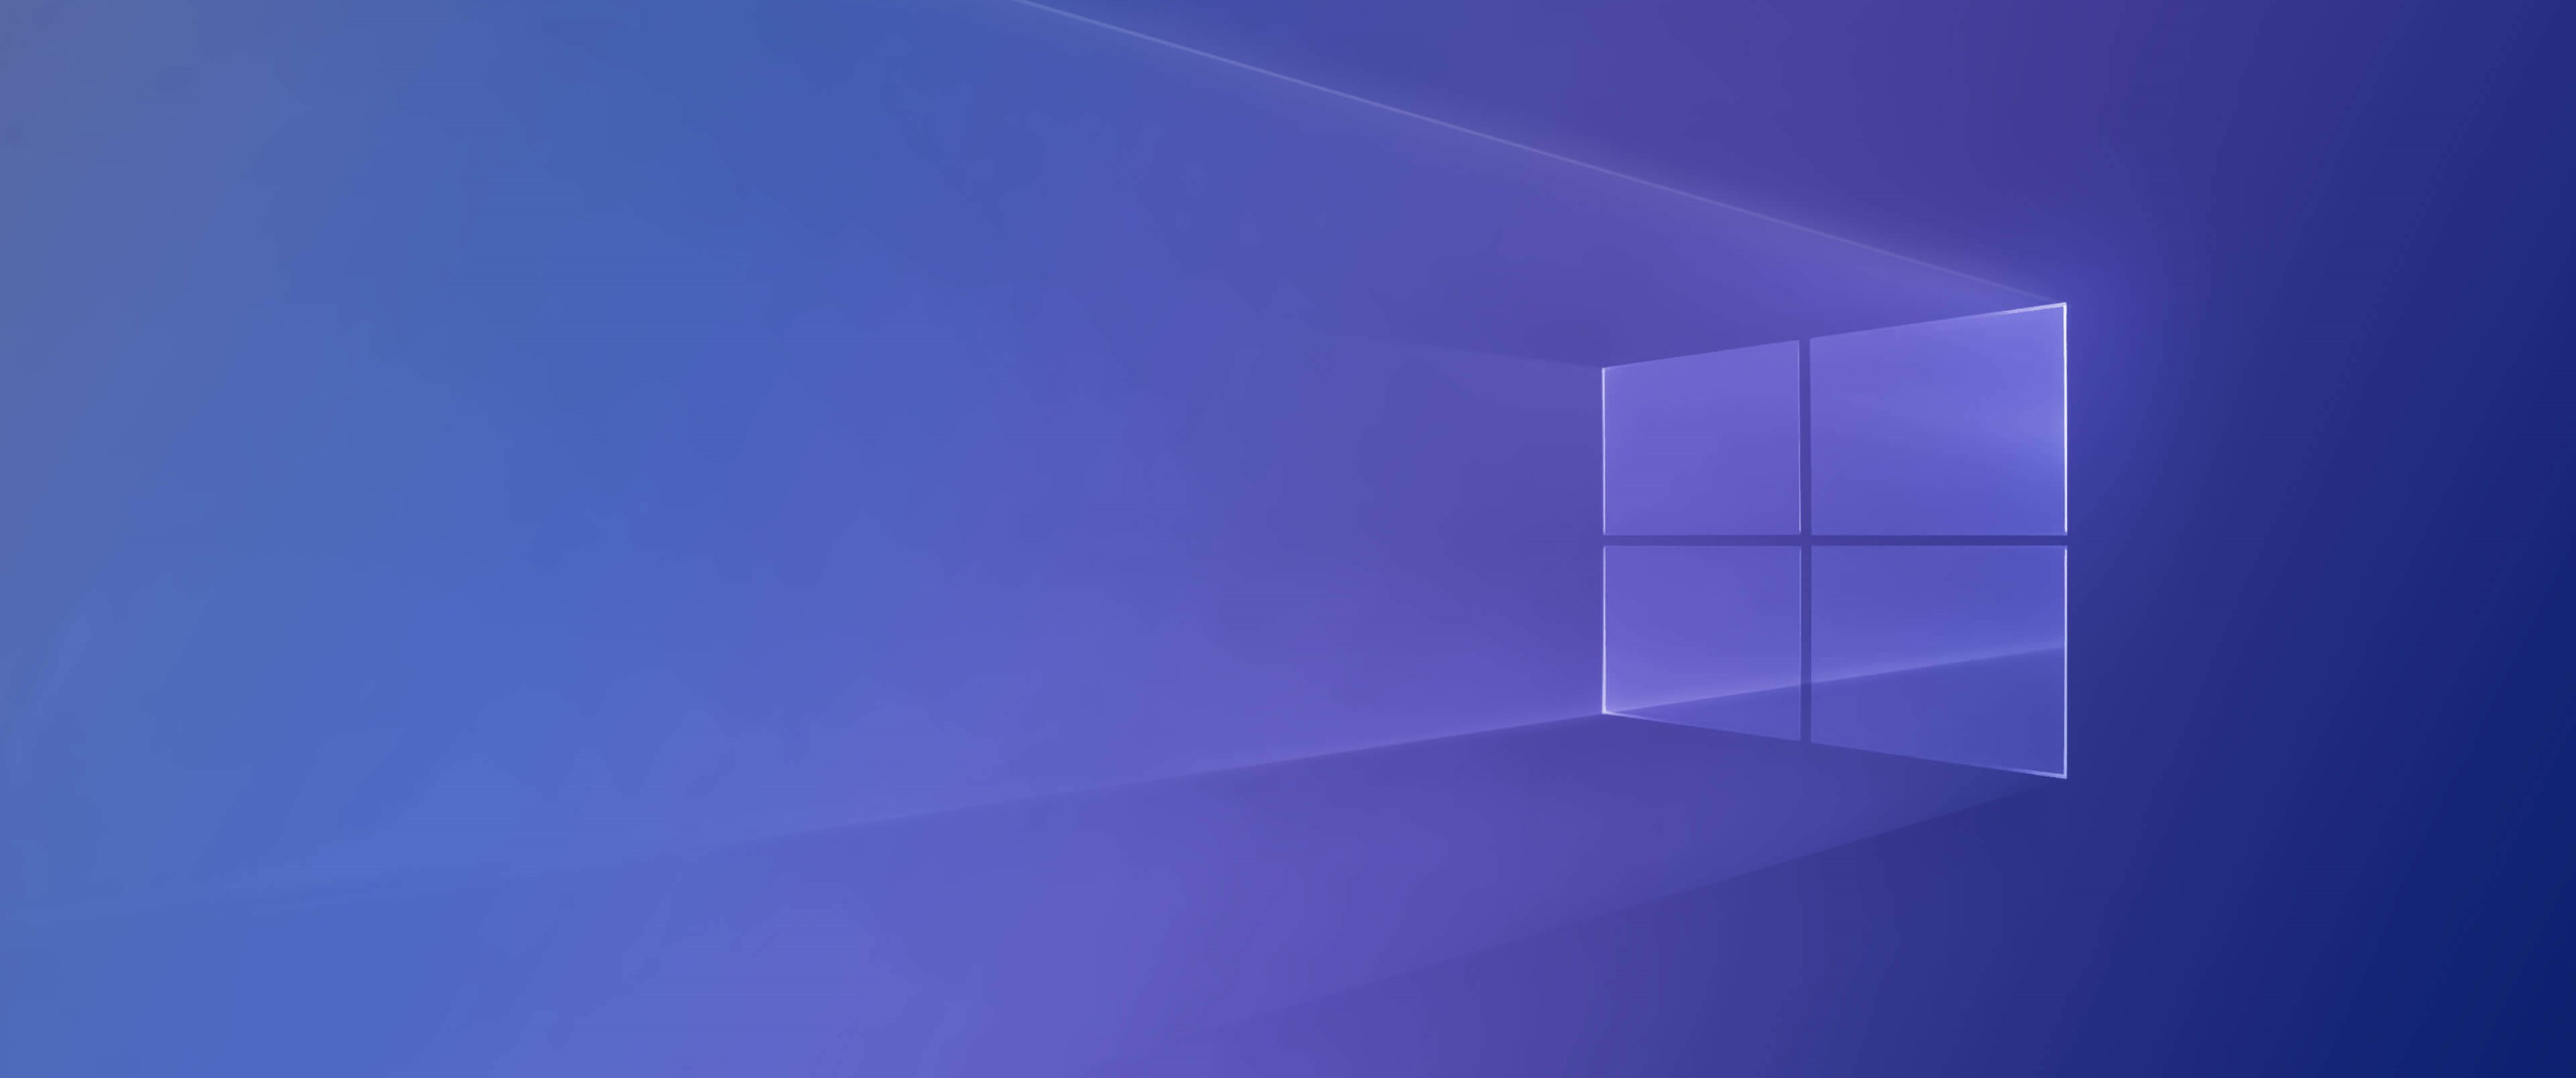 Windows 10 đã trở thành một trong những hệ điều hành được yêu thích nhất và được sử dụng rộng rãi nhất hiện nay. Khám phá những hình nền tuyệt đẹp, phù hợp với phong cách và sở thích của bạn trên Windows